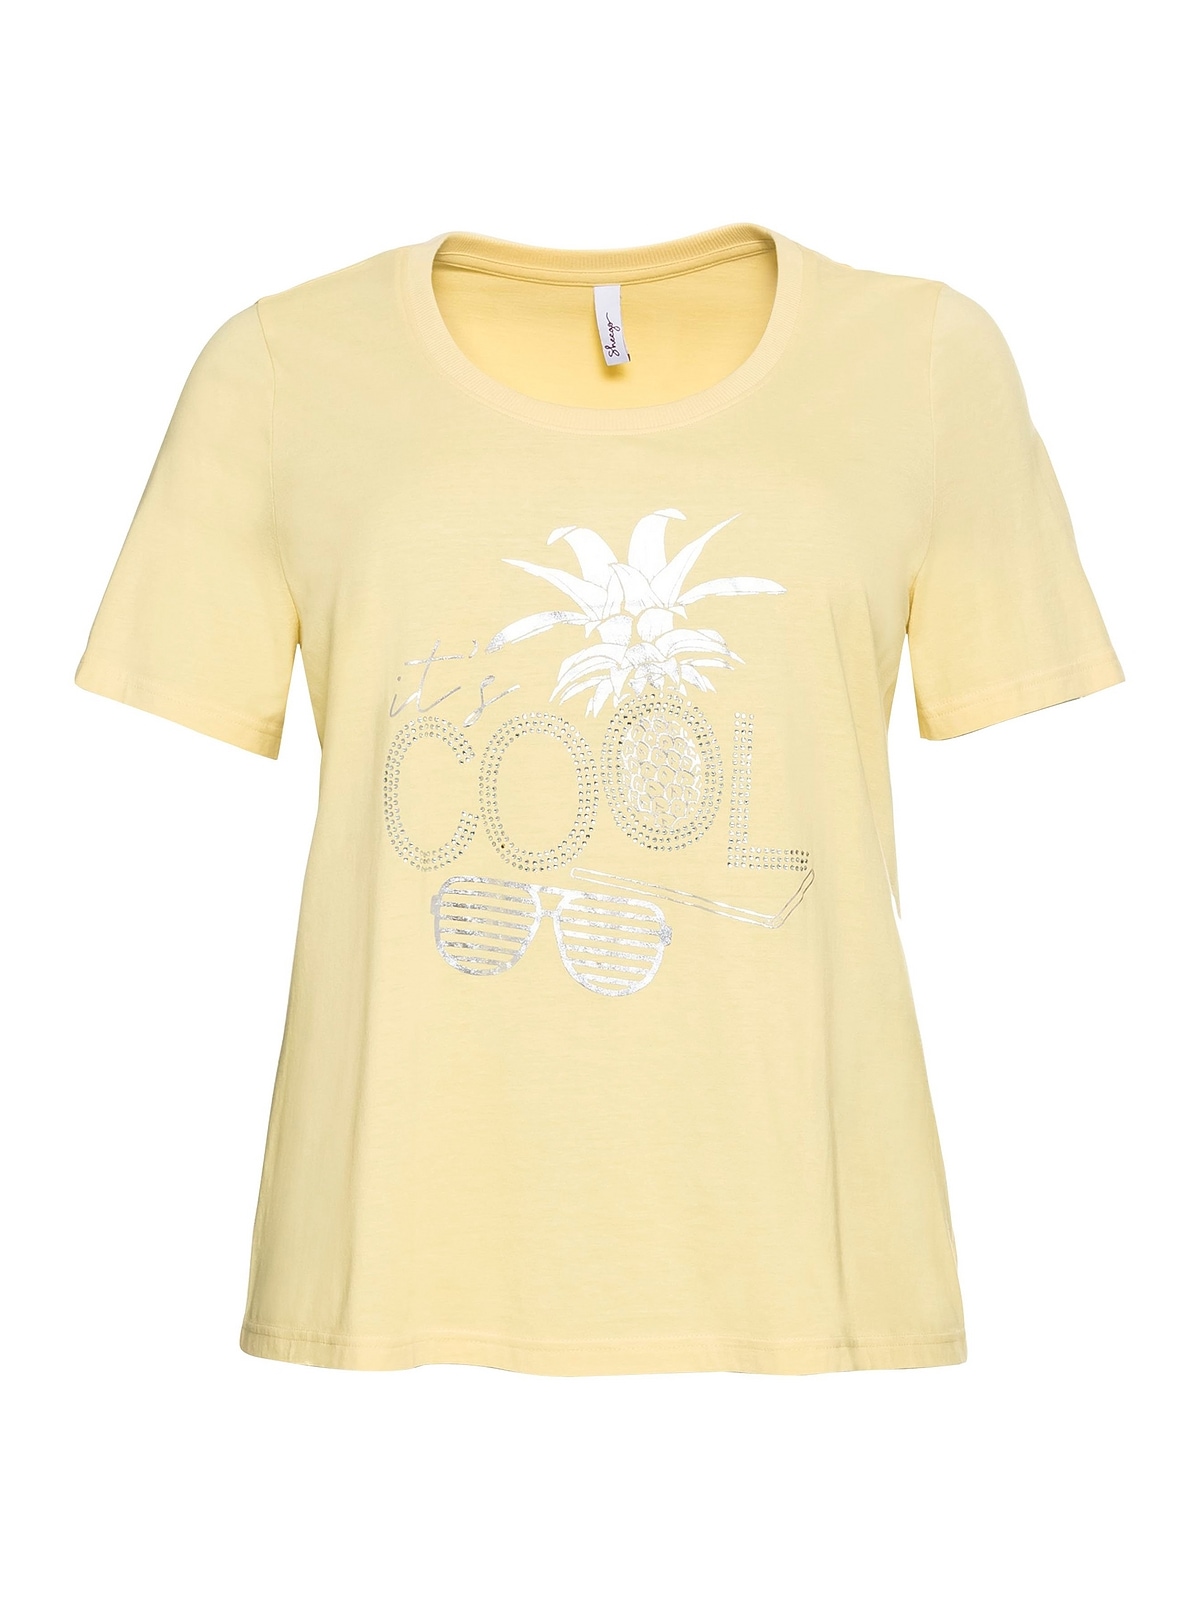 Sheego T-Shirt »Große Größen«, schimmerndem kaufen und Frontdruck mit Glitzersteinen